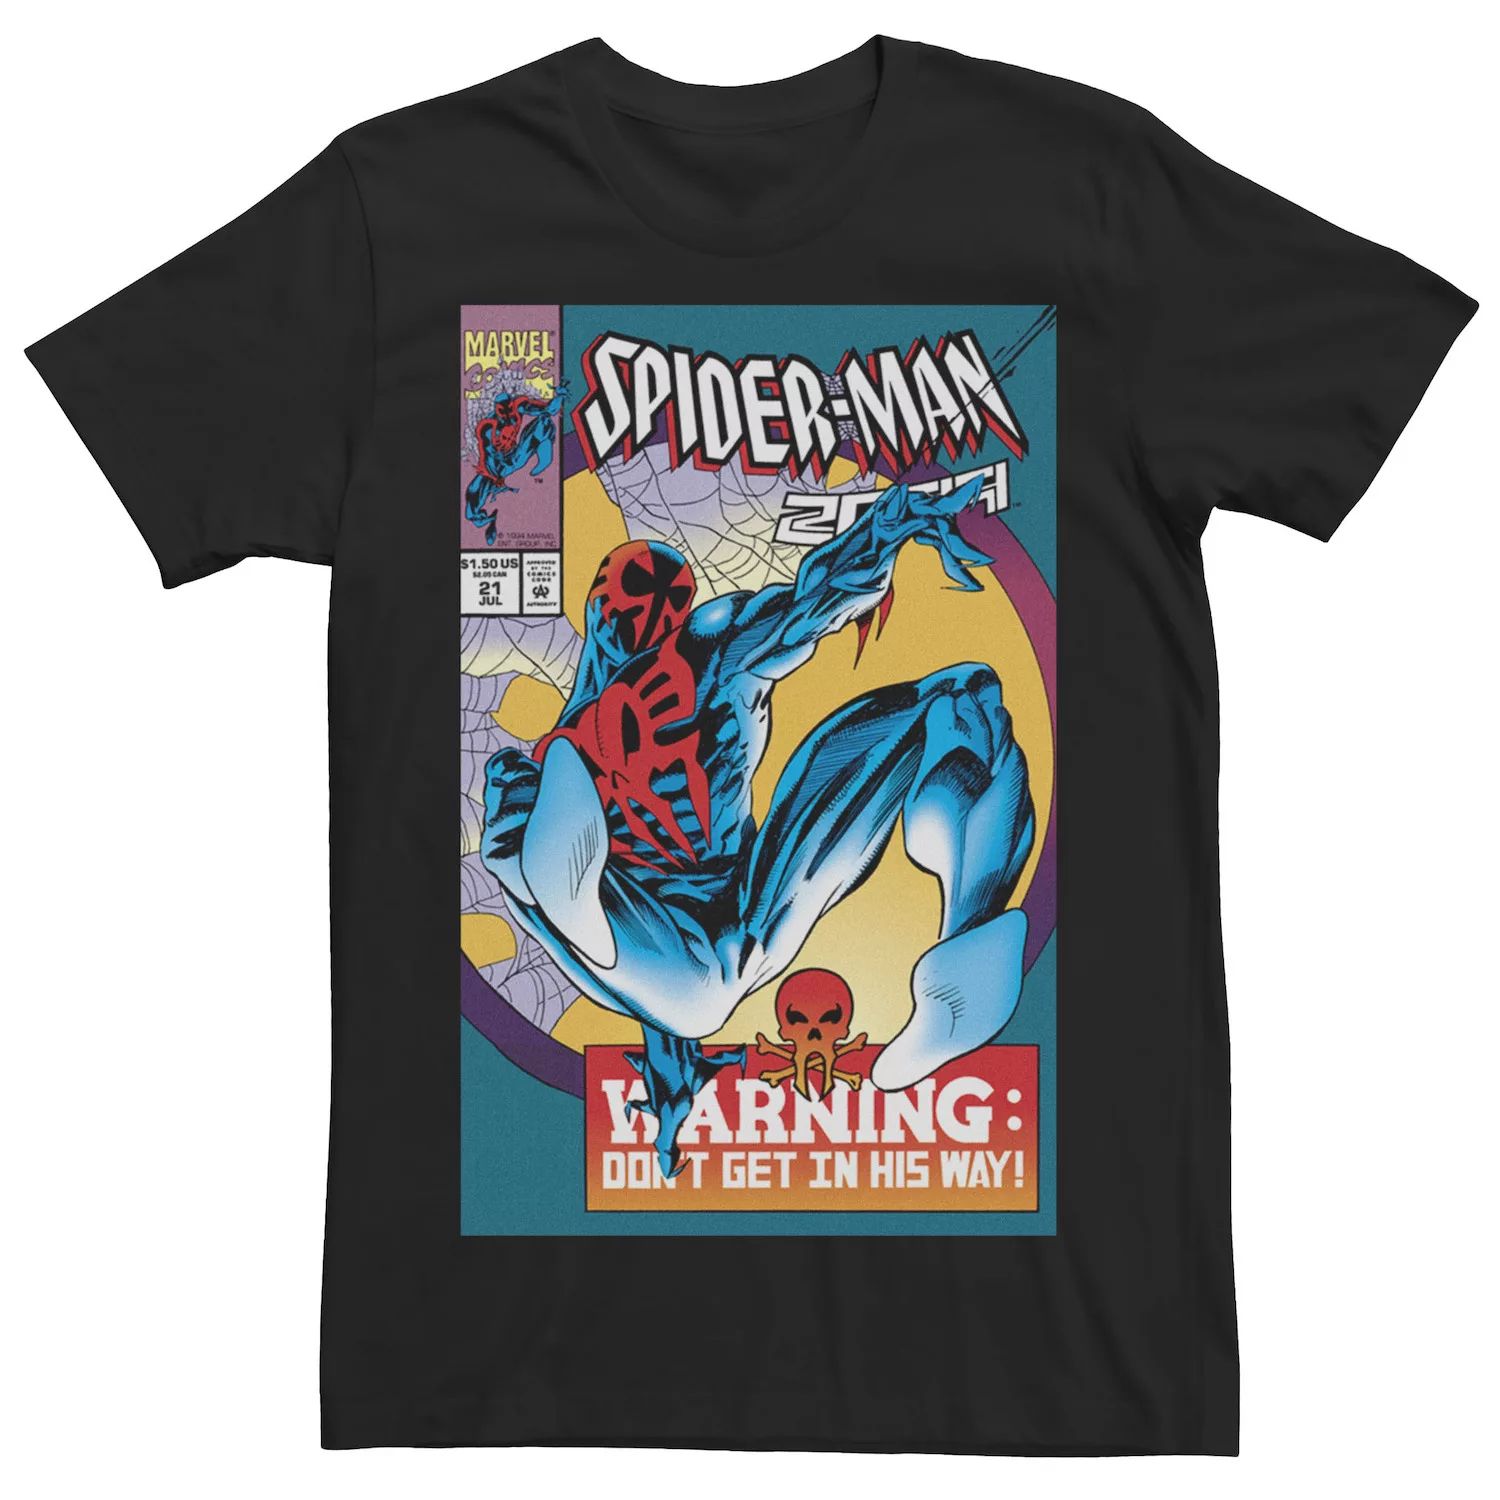 Мужская футболка с обложкой комикса «Человек-паук 2099» Marvel мужская черная футболка с обложкой комикса marvel prince namor черный